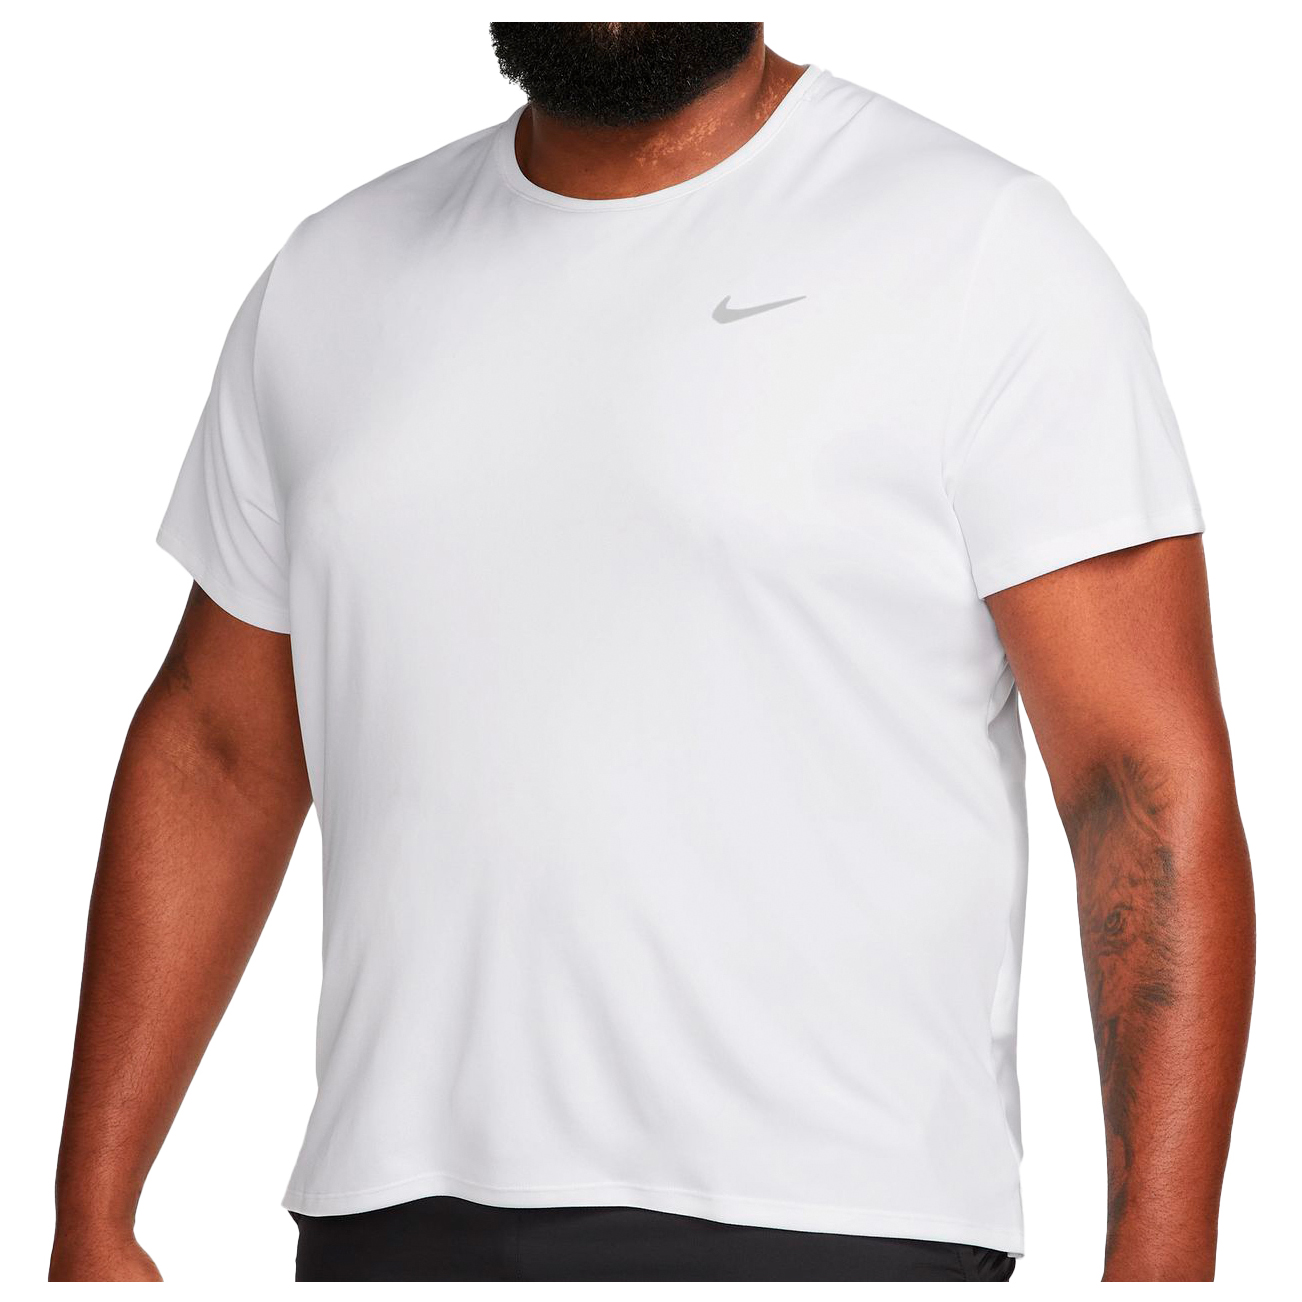 Беговая рубашка Nike Dri FIT UV Miler, цвет White/Reflective Silver майка nike m nk df uv rdvn miler tank prt мужчины dm4804 100 s